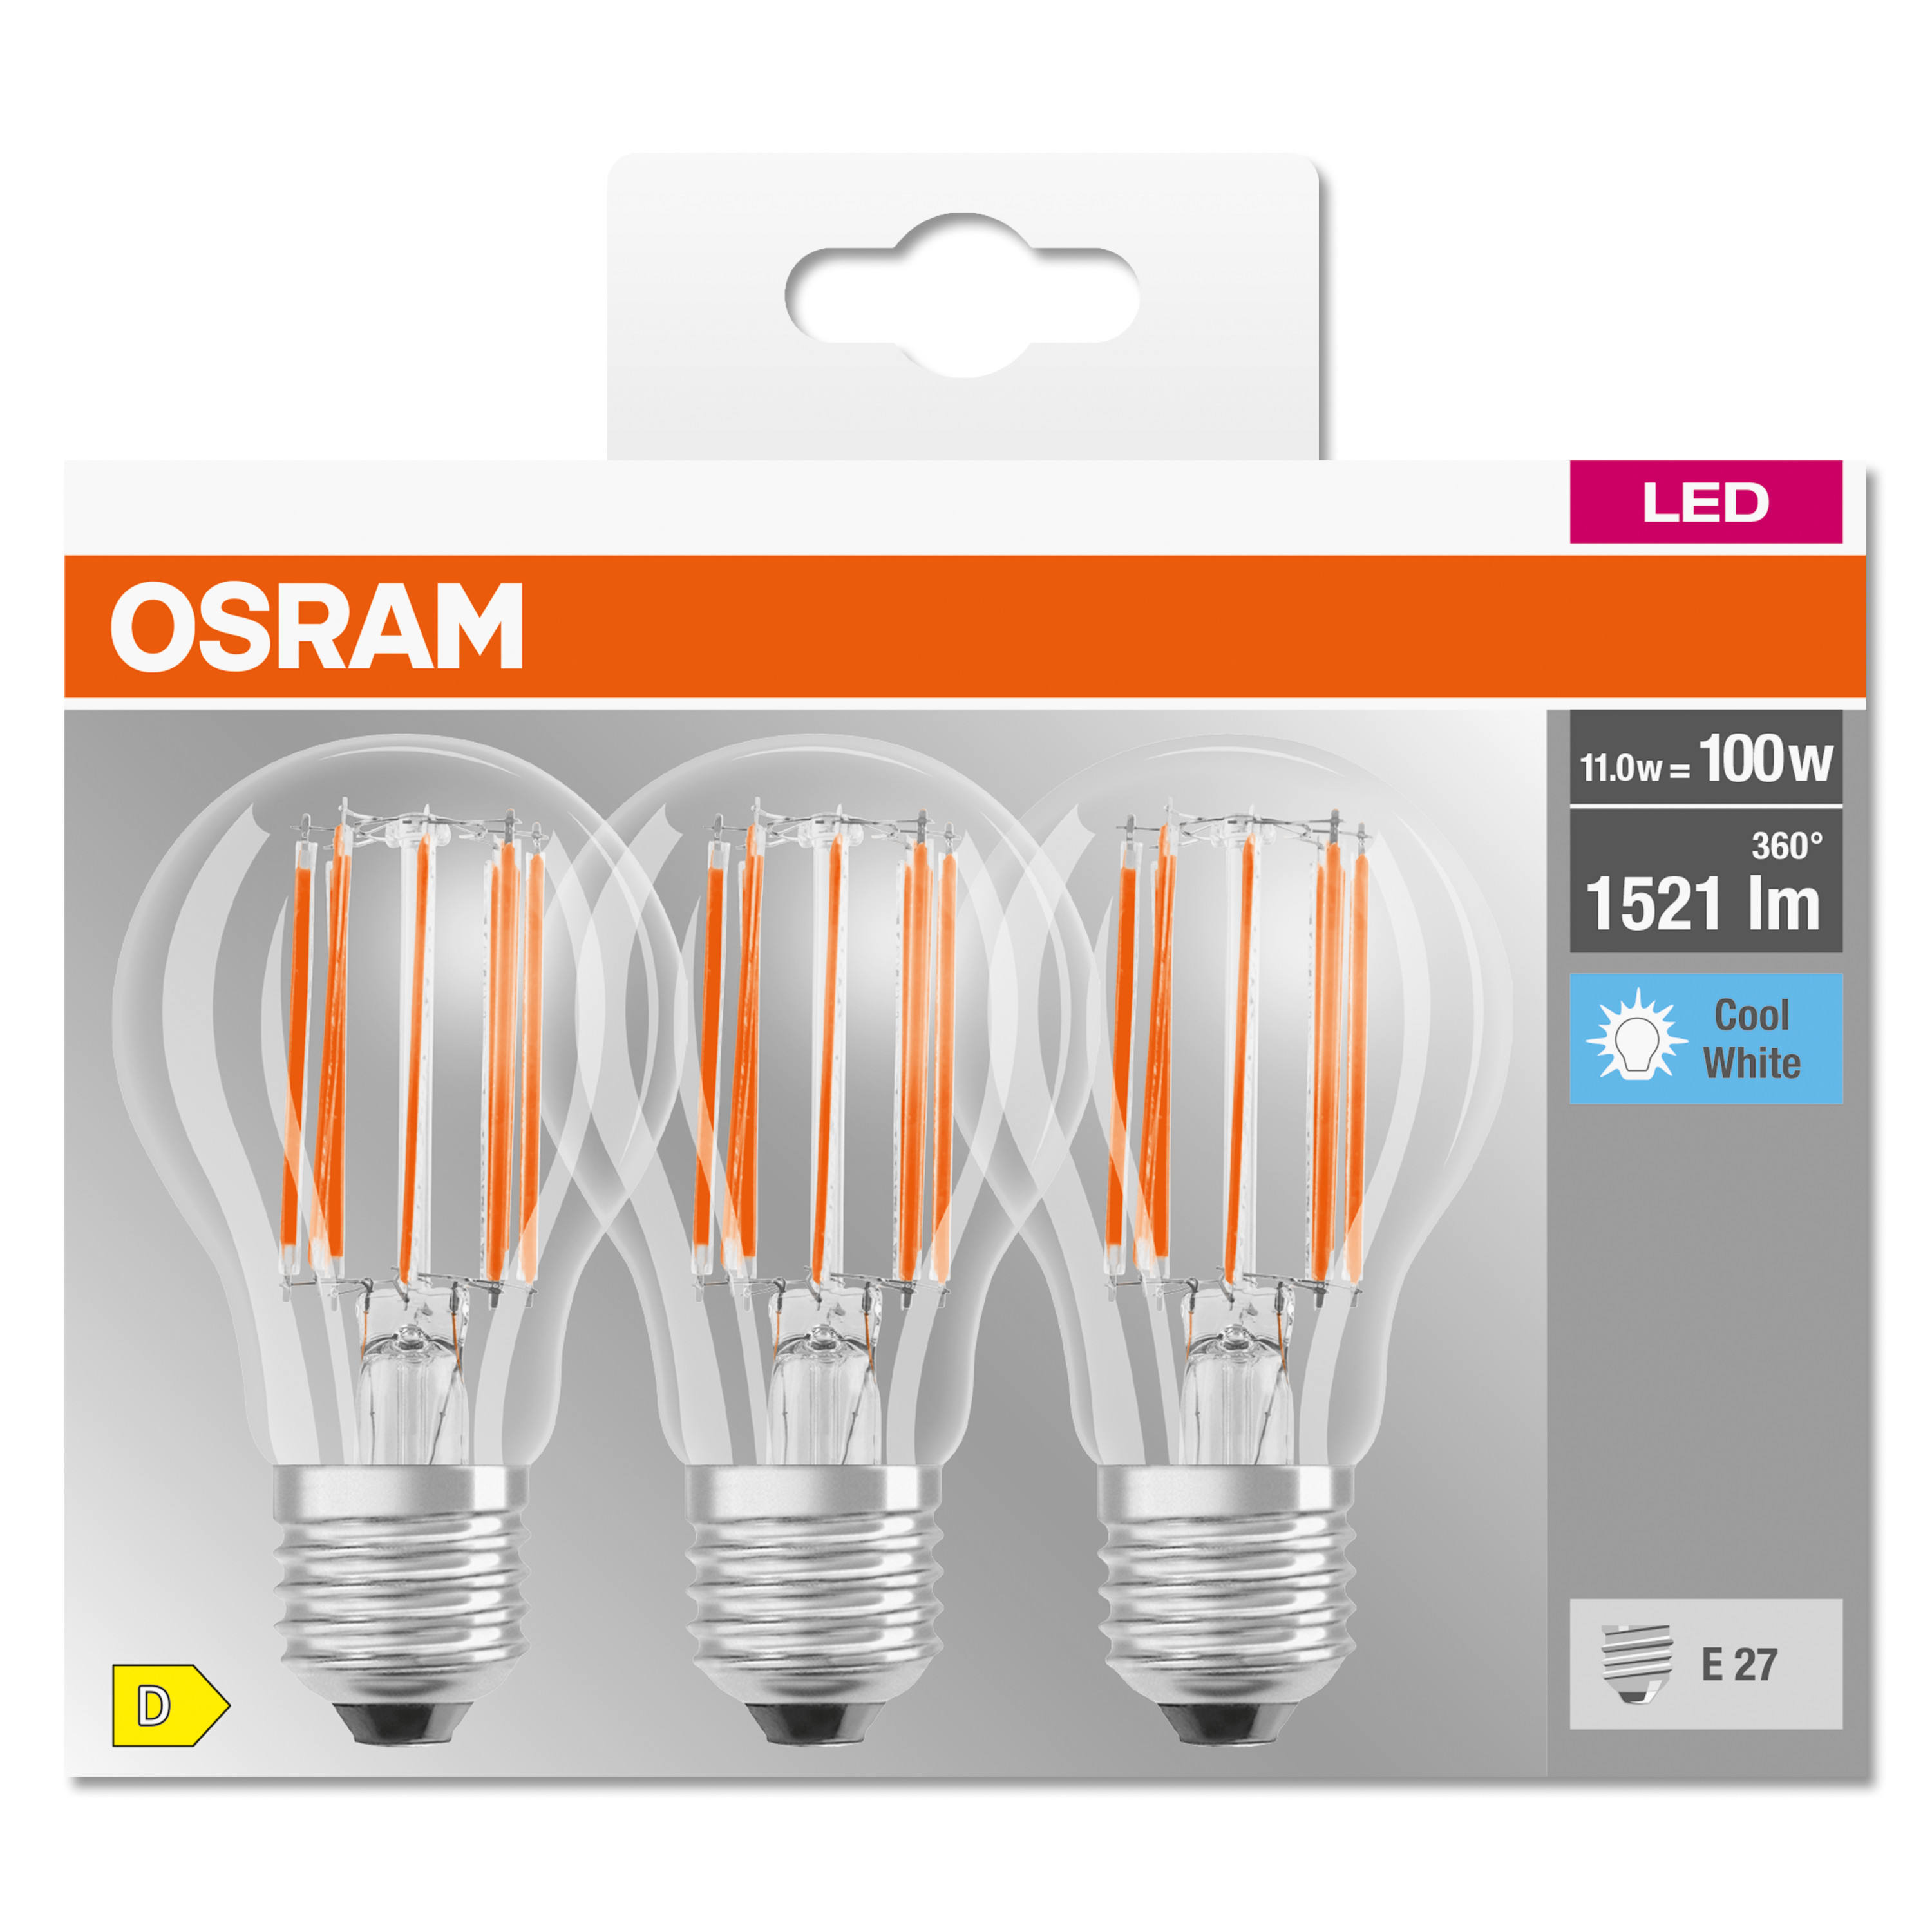 LED A OSRAM  CLASSIC Lampe BASE LED lumen 1521 Kaltweiß